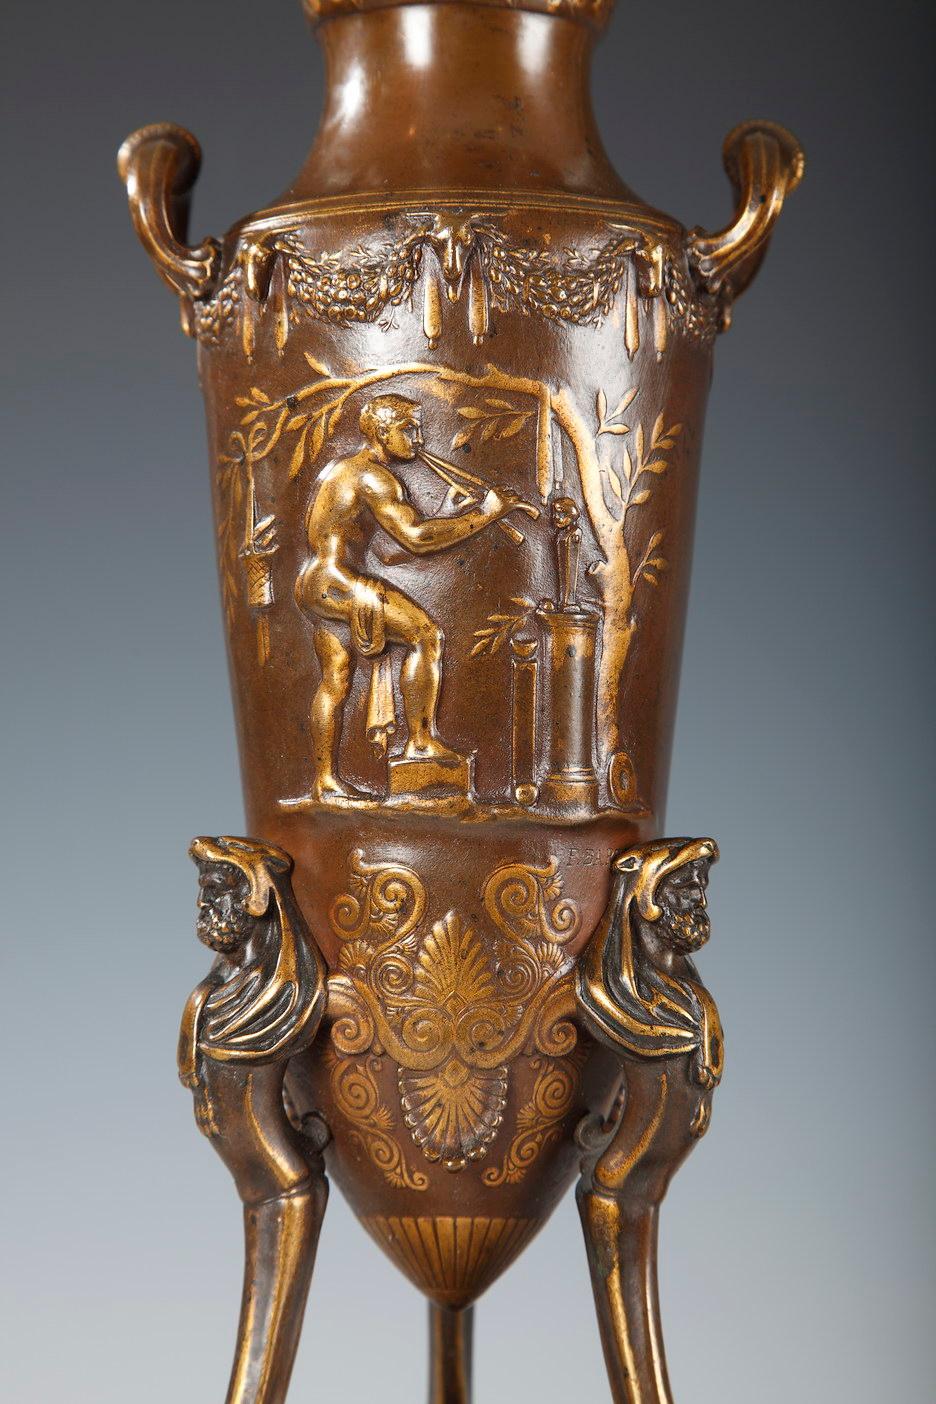 Paire de vases de style grec en bronze à deux patines. Chacune, conçue en forme d'amphore tripode ornée de têtes d'Hercule, est décorée en bas-relief de scènes de sacrifice de l'Antiquité. De nombreux masques, pampres, instruments de musique et